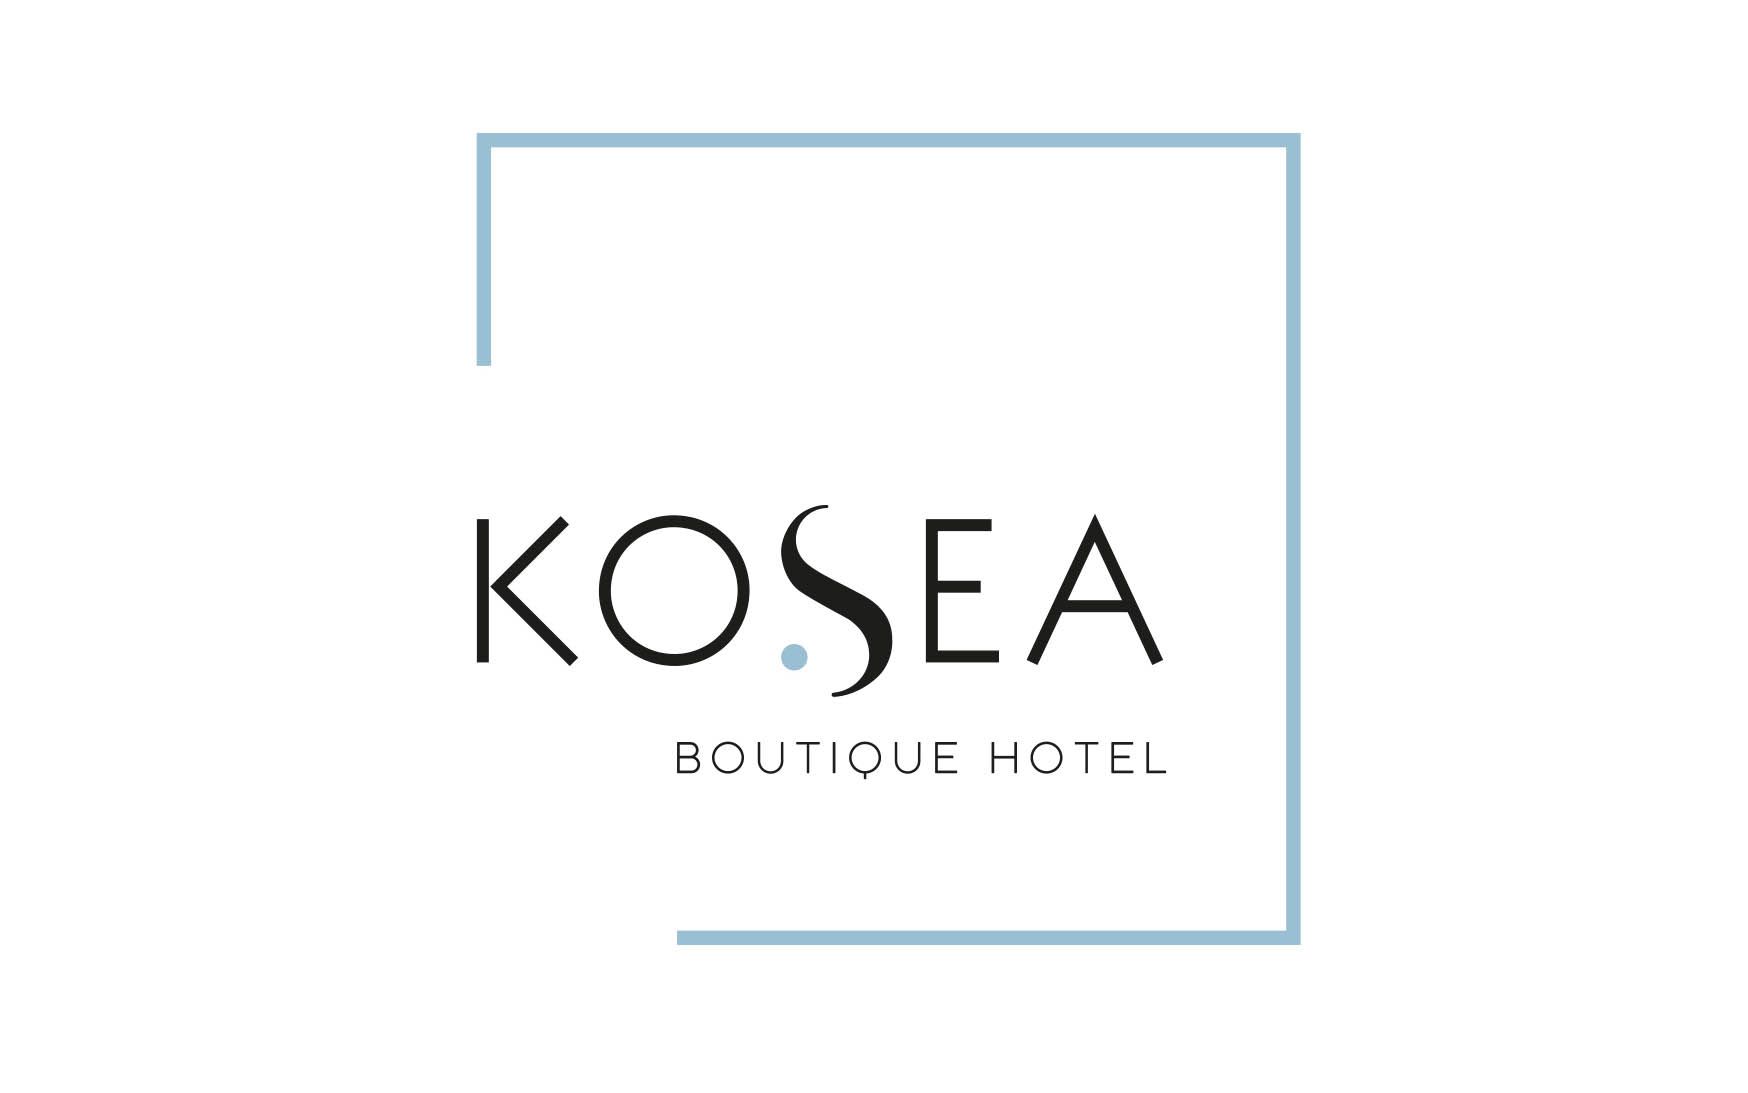 Το ξενοδοχείο KoSea Boutique Hotel, 12μηνης λειτουργίας που βρίσκεται στην πόλη της Κω, αναζητεί καμαριέρα/καθαρίστρια